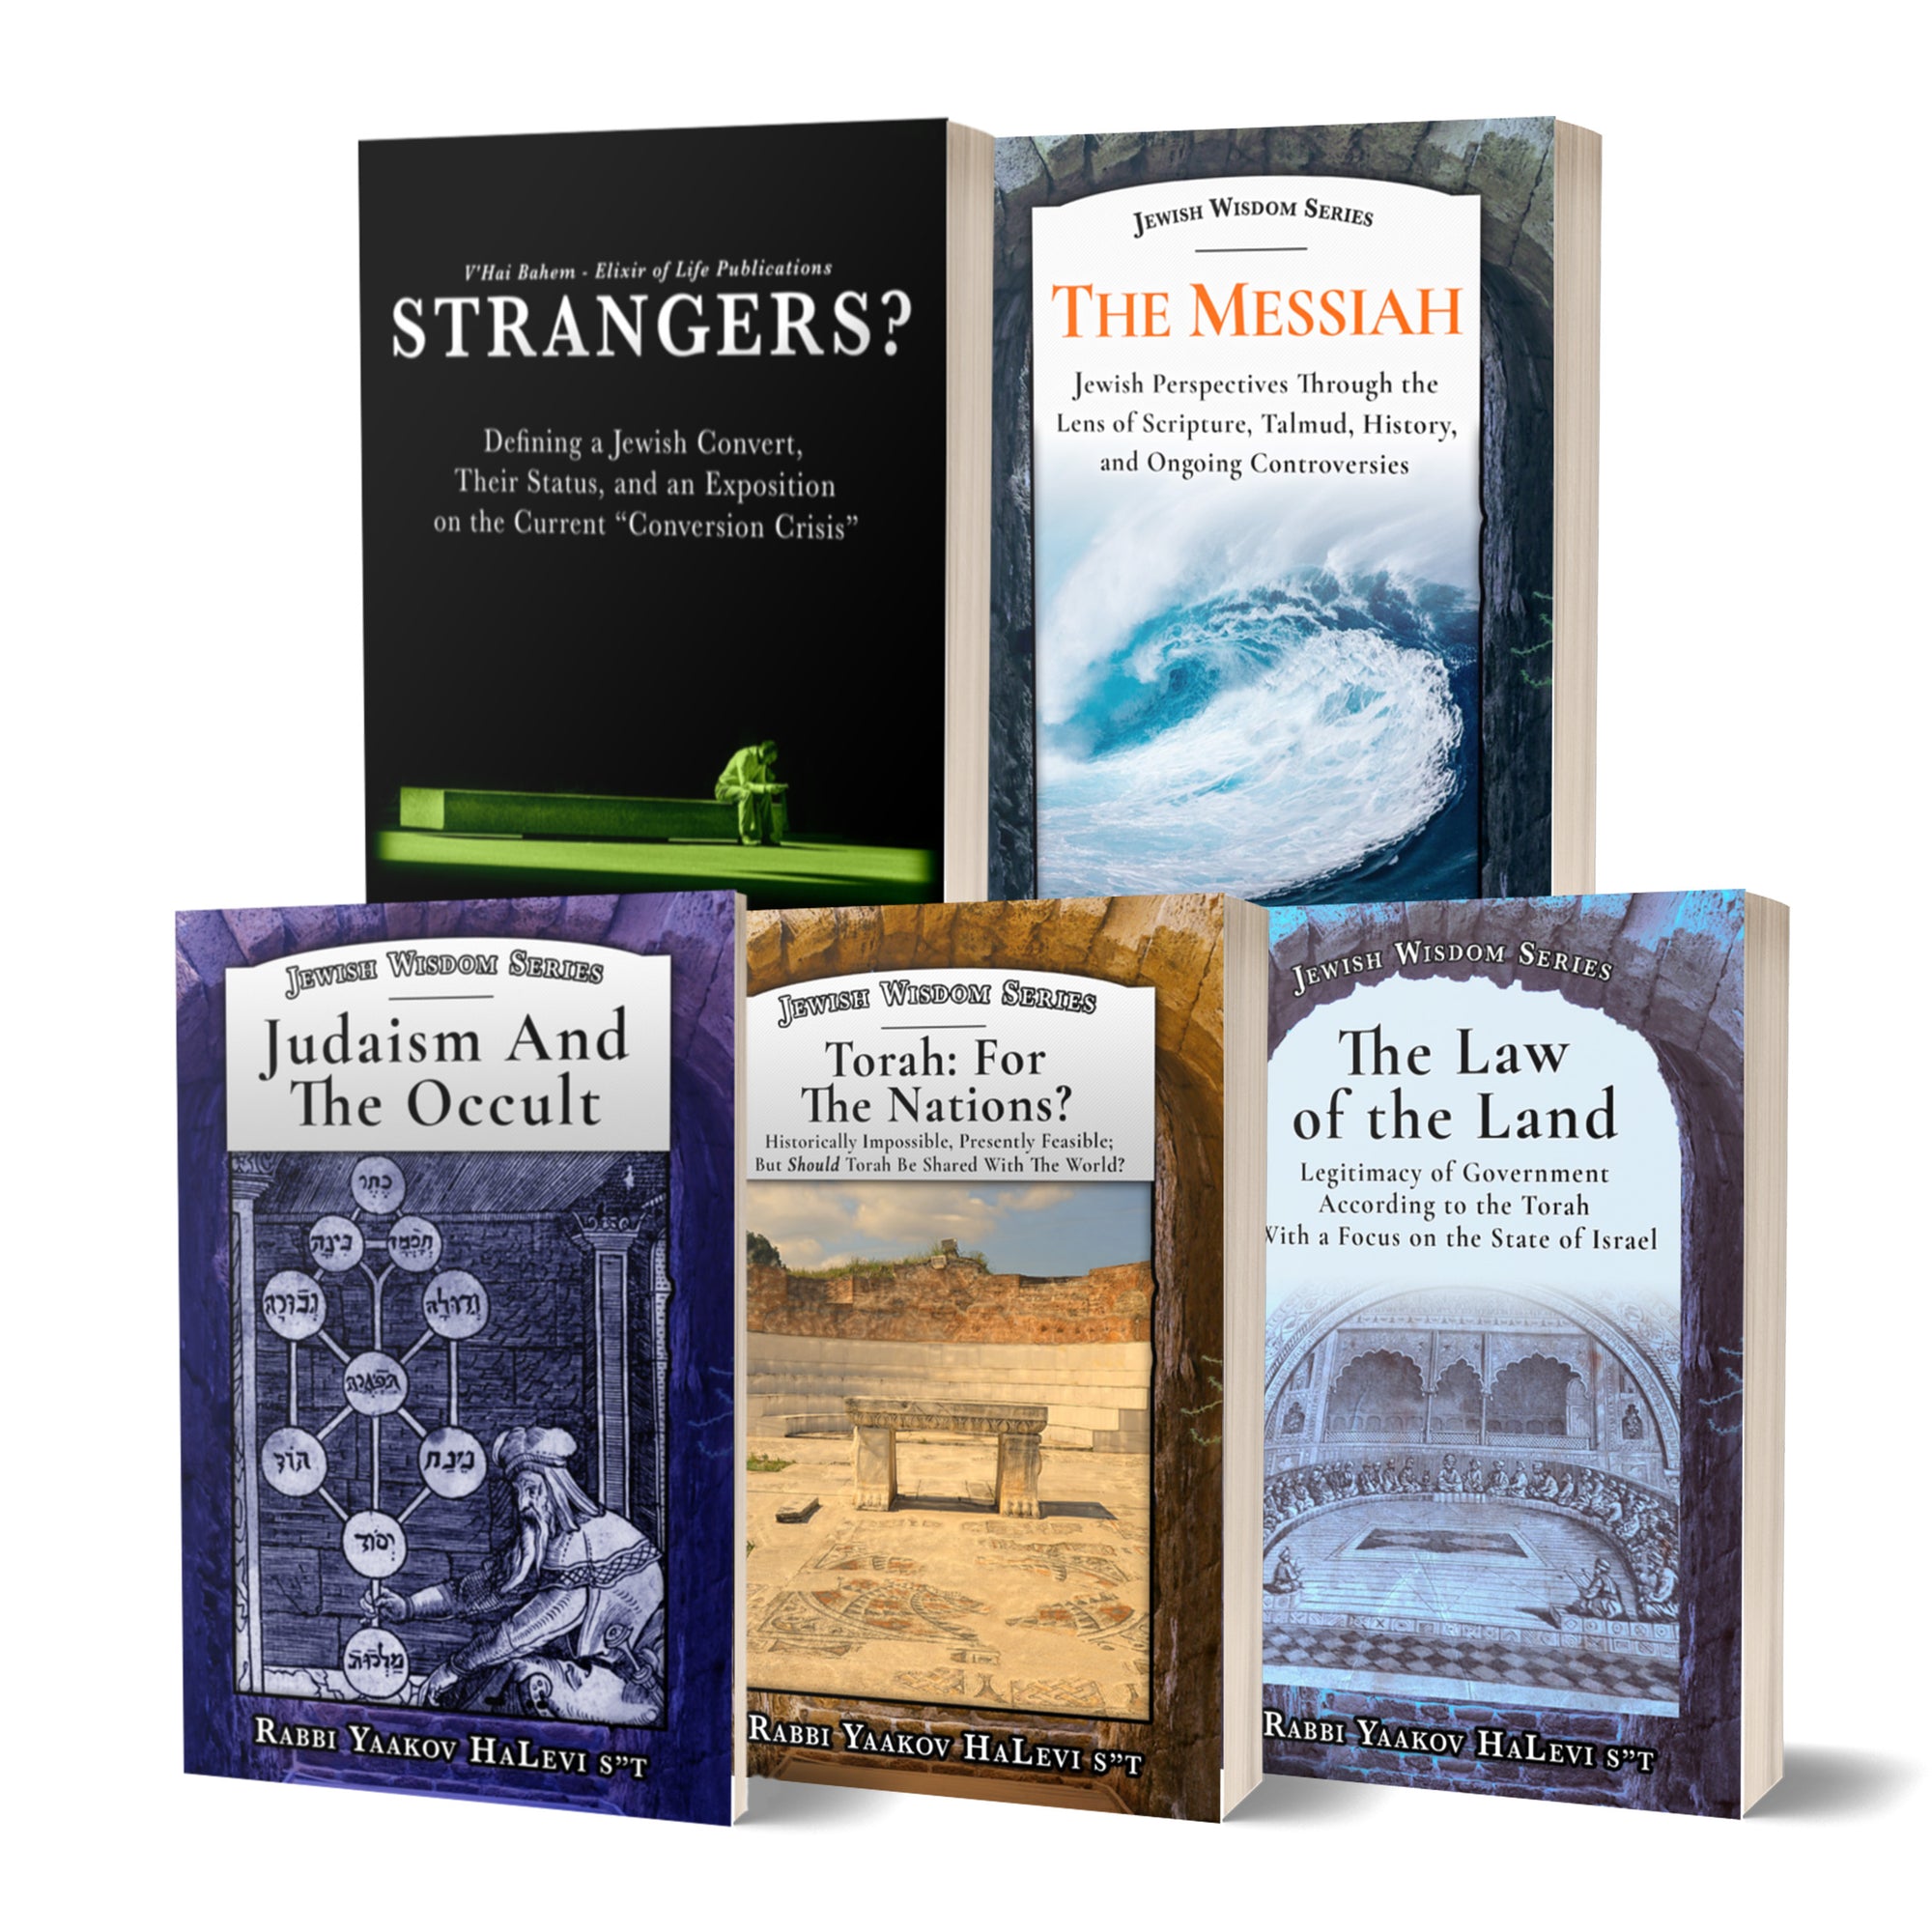 Libros sobre la Torá y el judaísmo